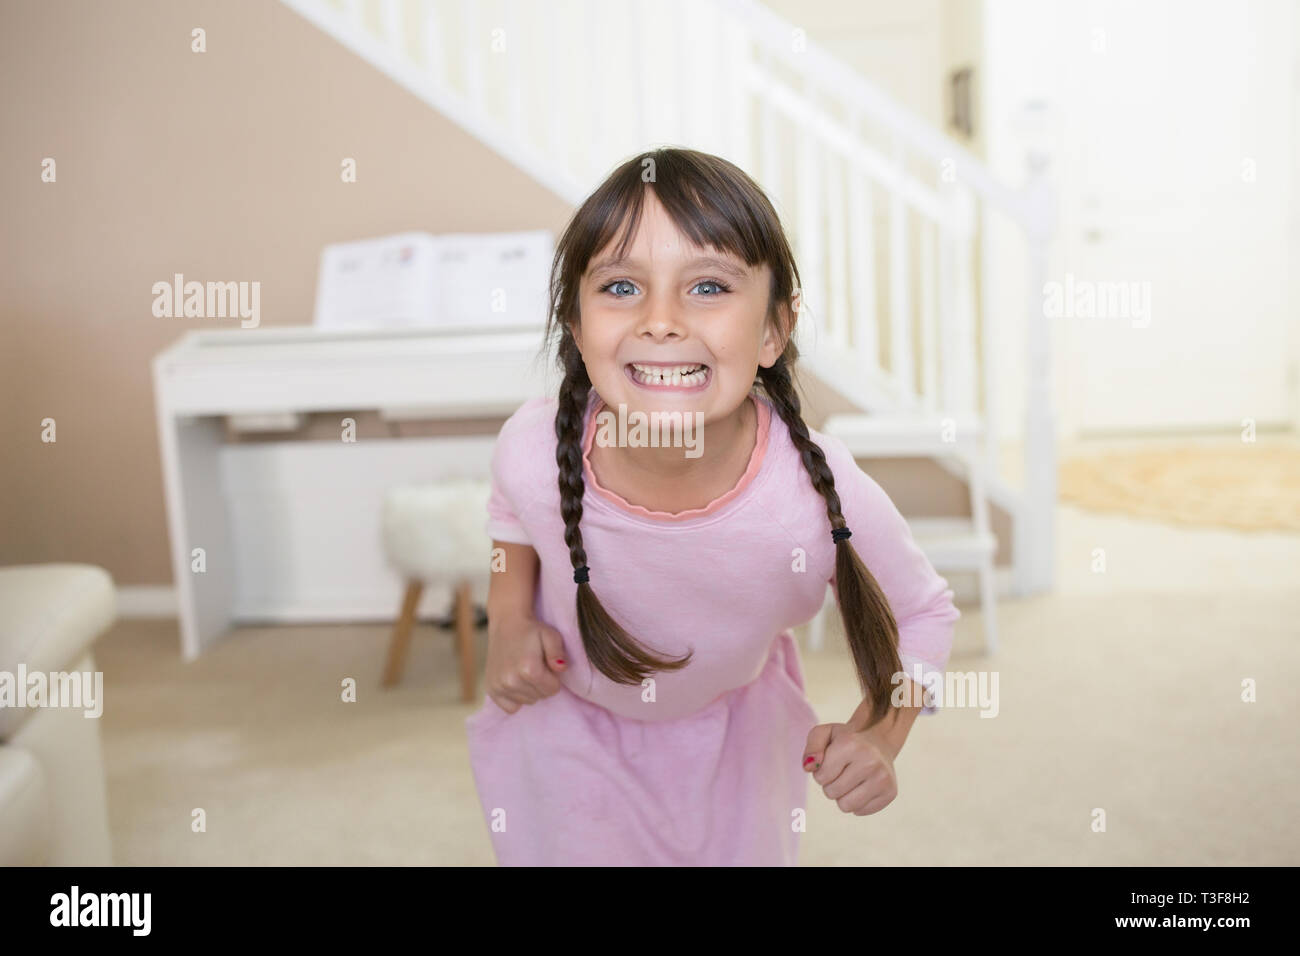 Gerne 6-7 Jahre altes Mädchen mit blauen Augen lächeln in die Kamera. Stockfoto